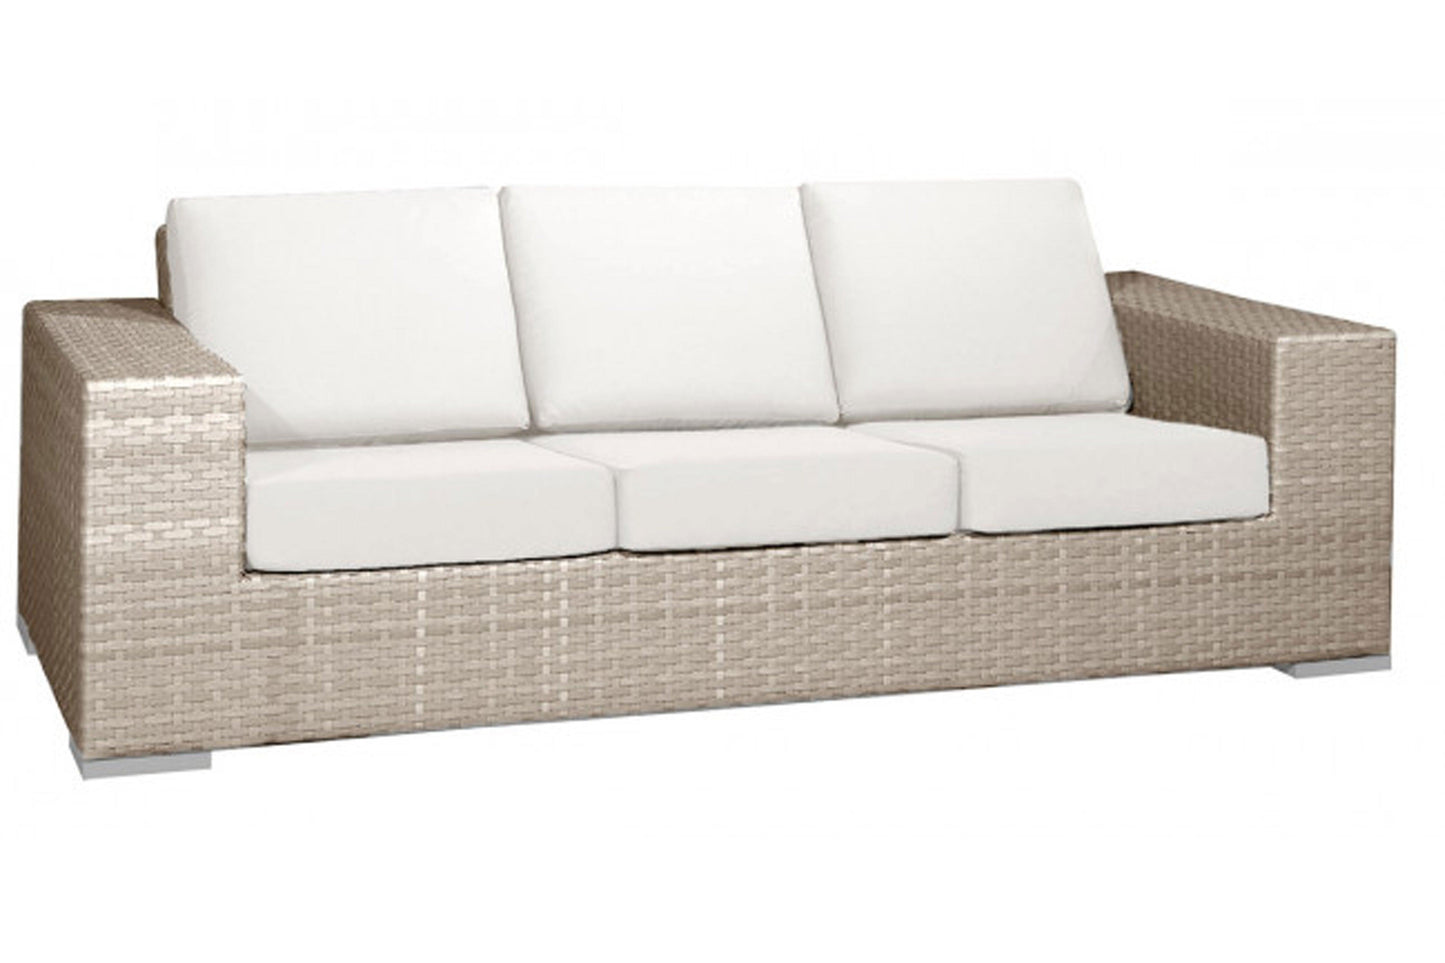 Cubix Sofa w/off-white cushion SKU: 902-1349-KBU-S - Venini Furniture 